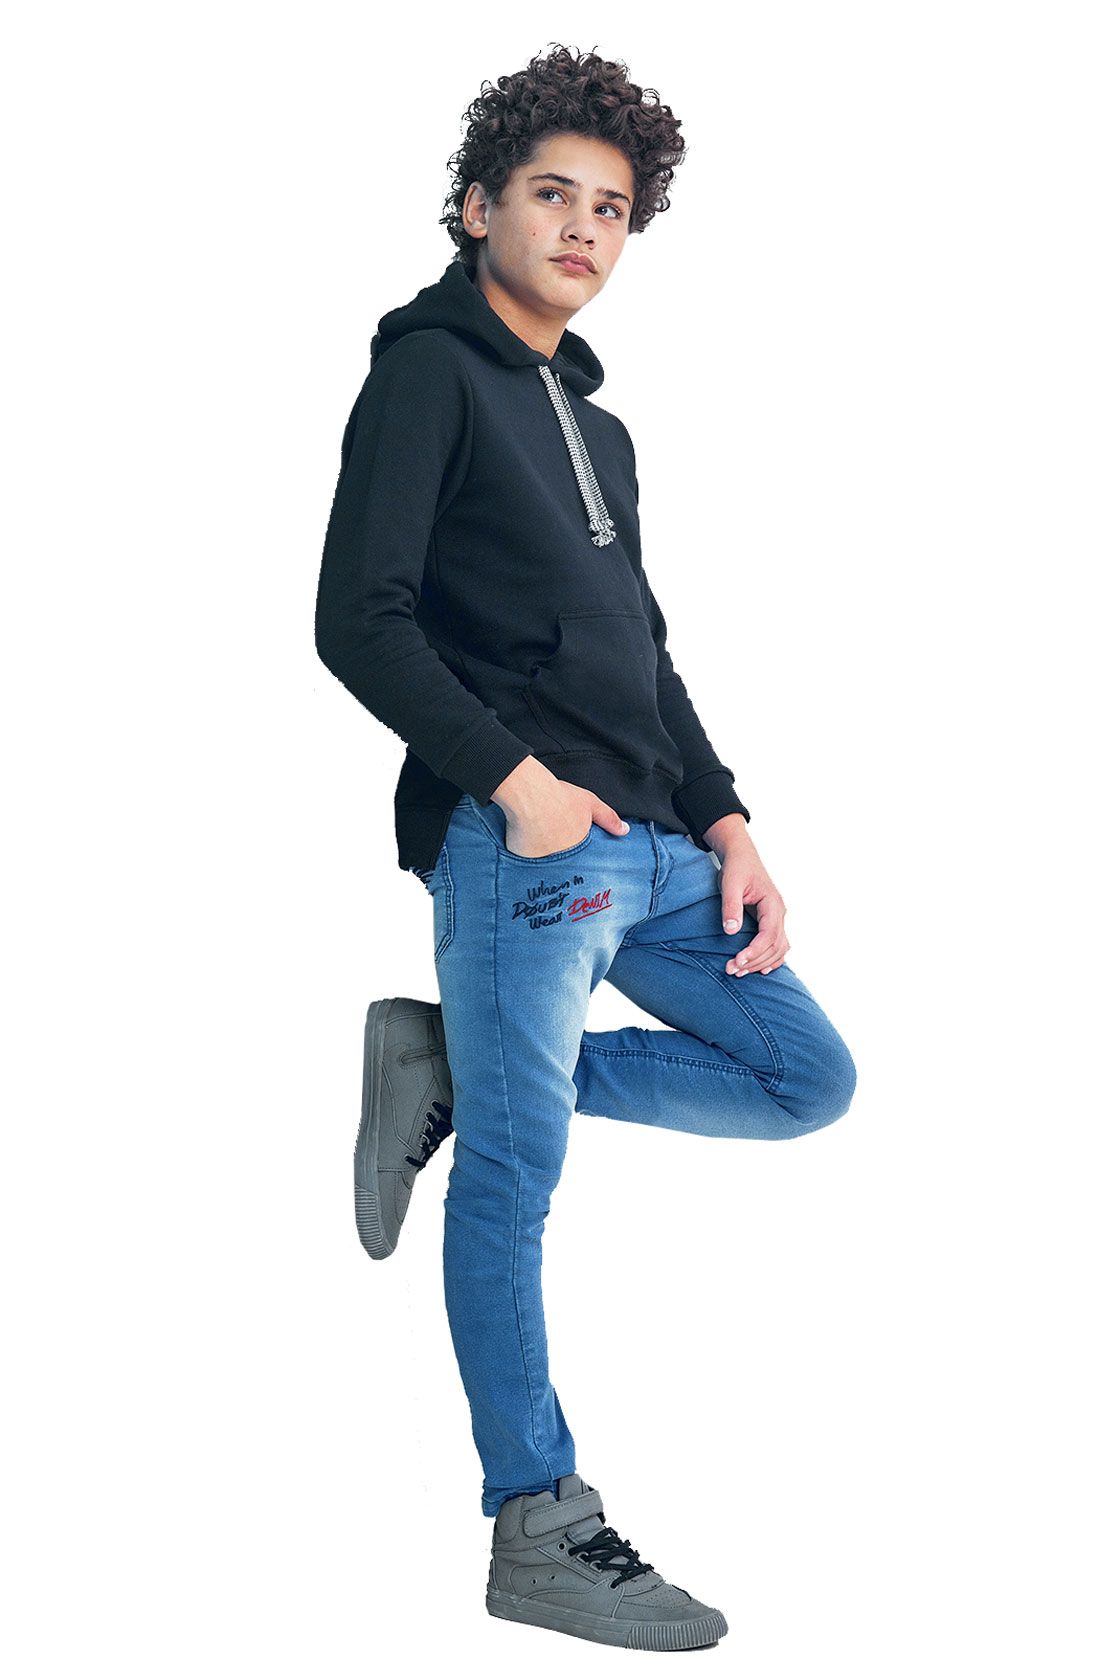 calça jean infantil masculina